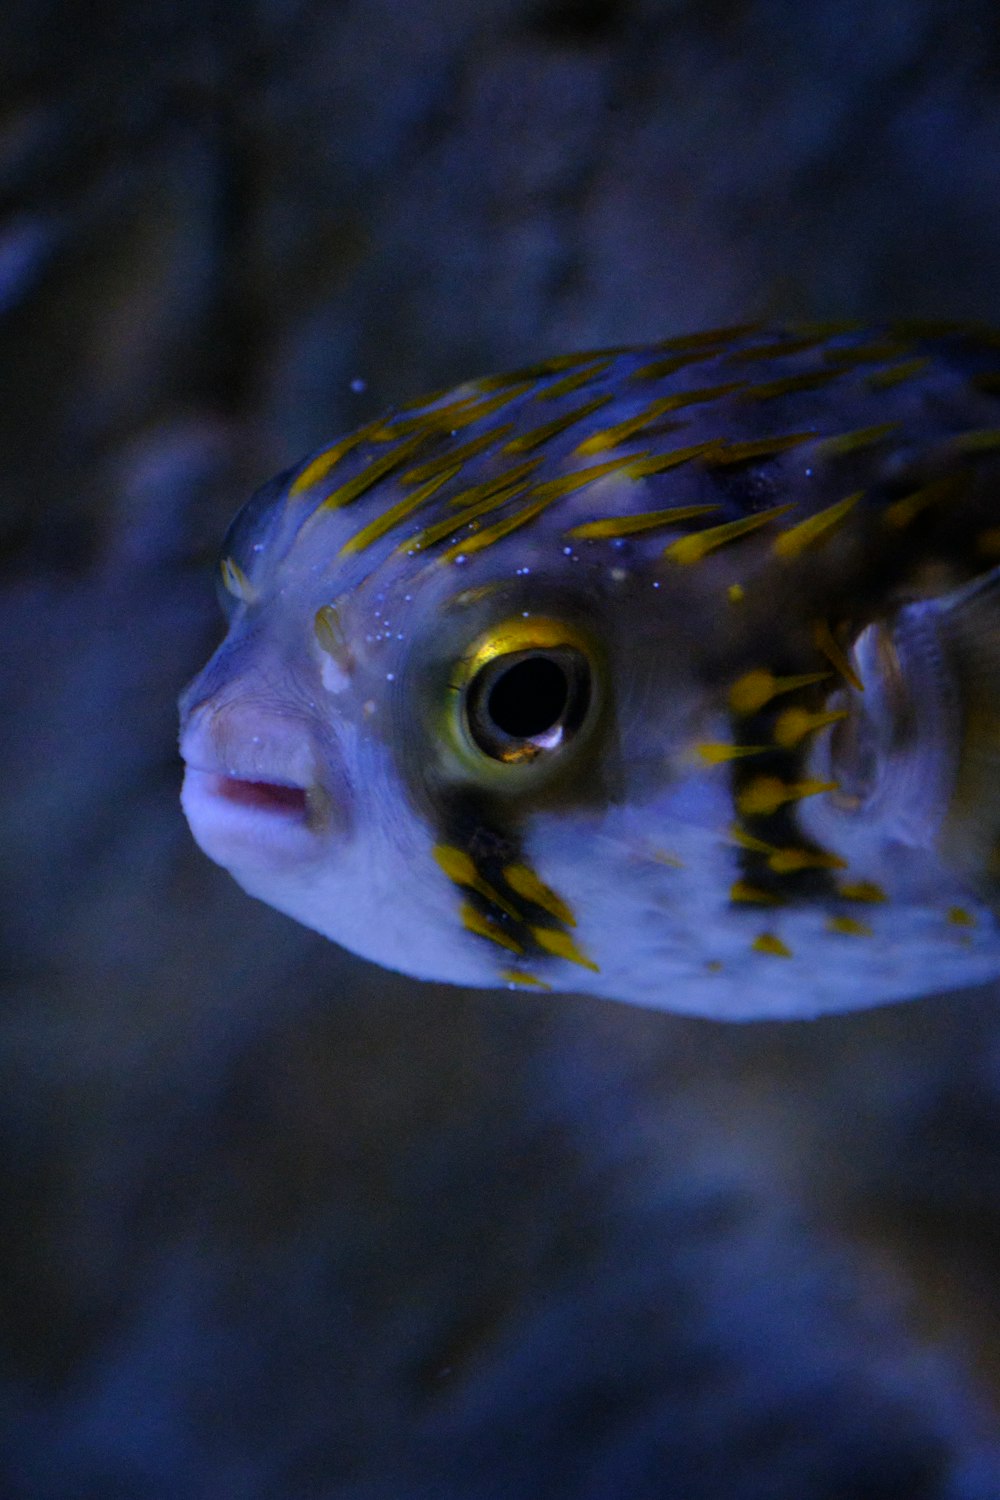 un poisson à la queue rayée jaune et bleue